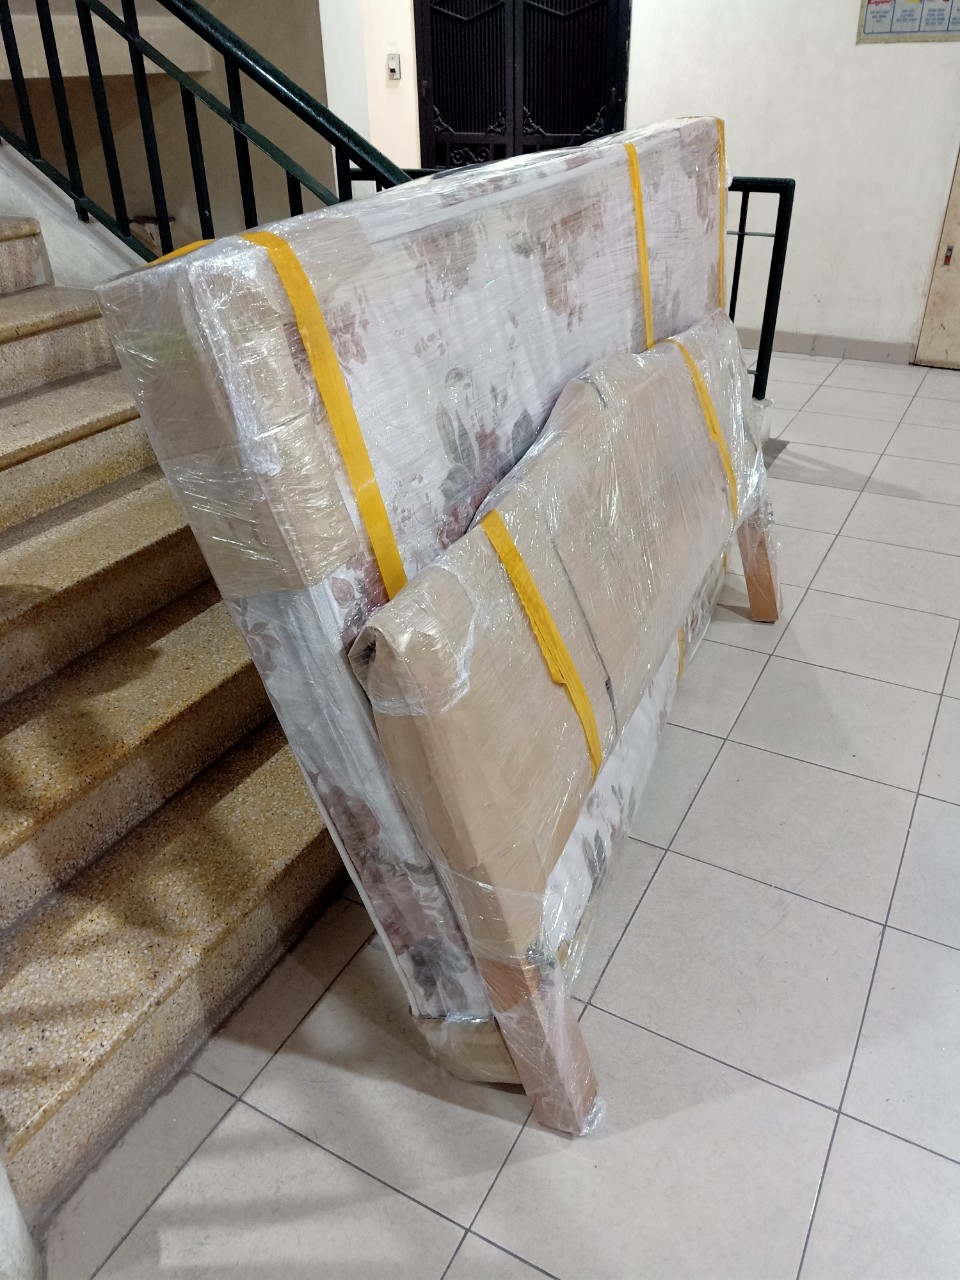 Gửi hàng Hà Nội Sài Gòn: cách đóng gói bàn ghế, đồ gỗ khi vận chuyển đi xa